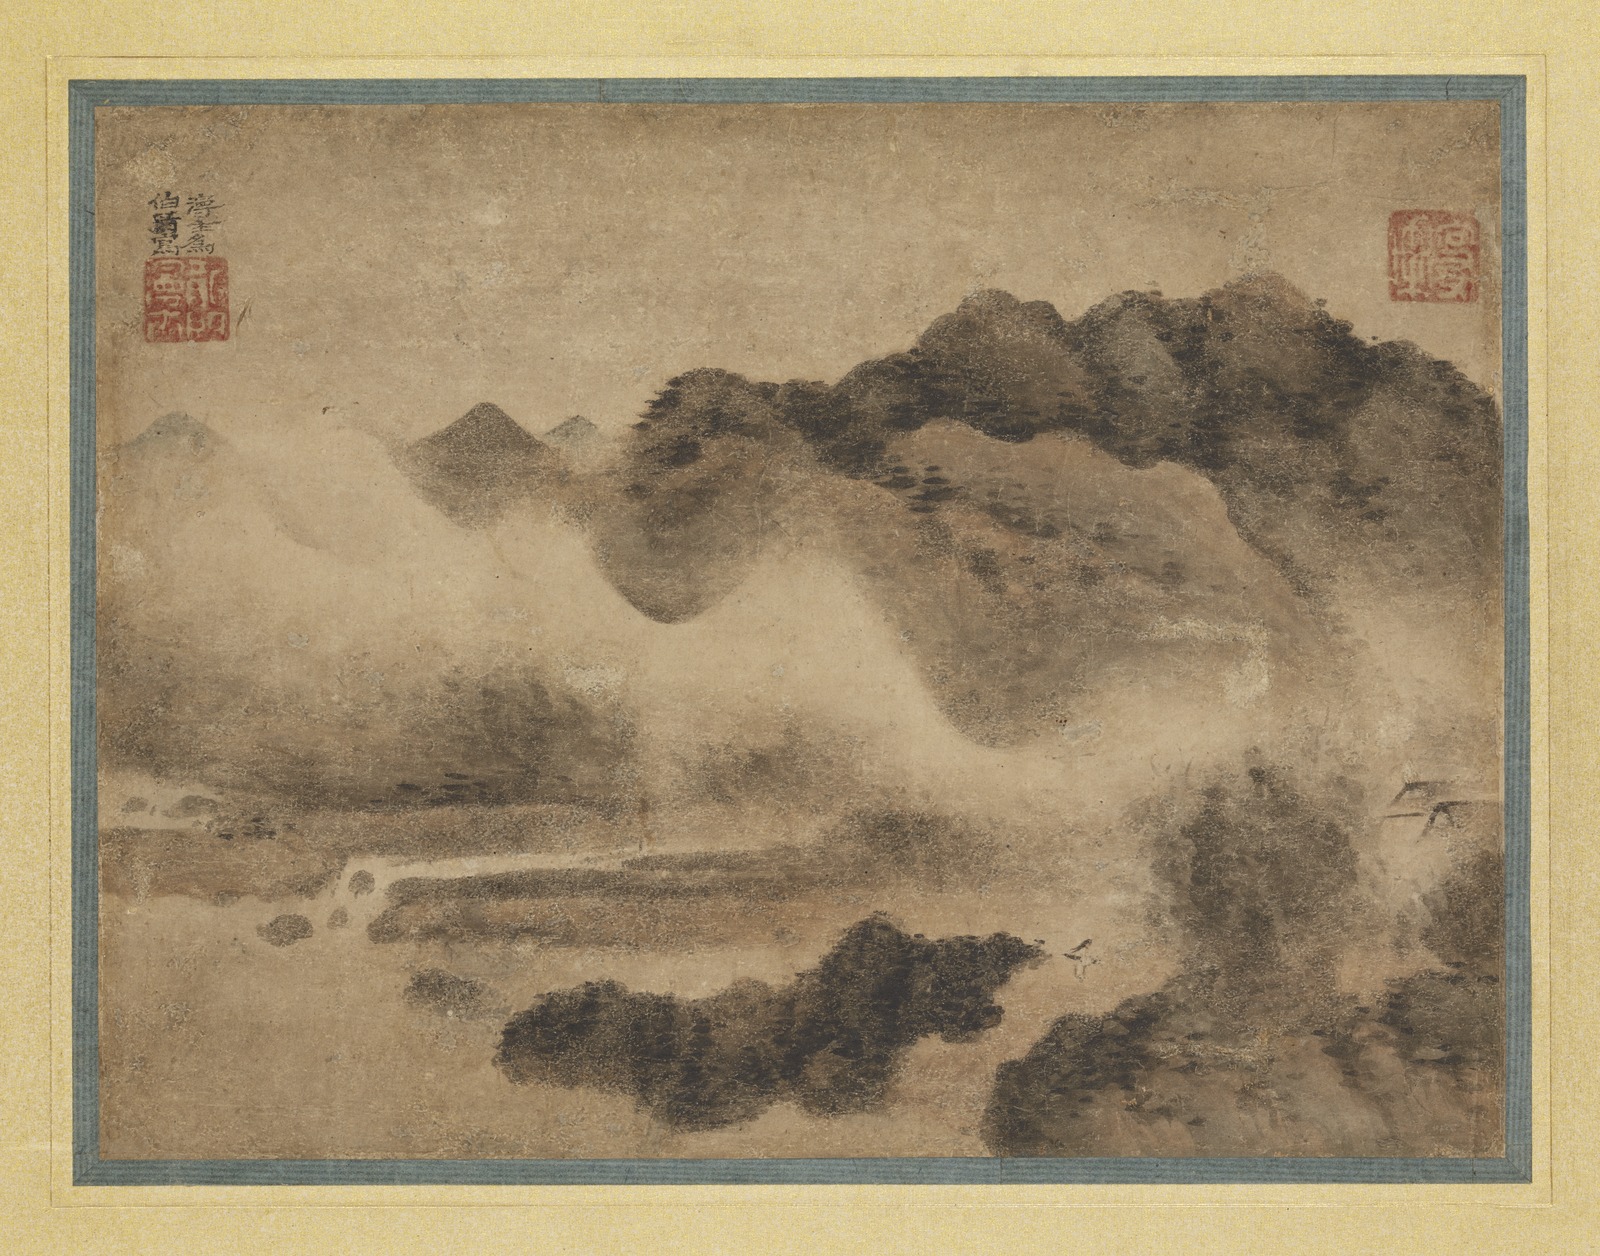 格安好評dr1122〈張大昕〉山水図「高源奔濤」中国画 山水、風月